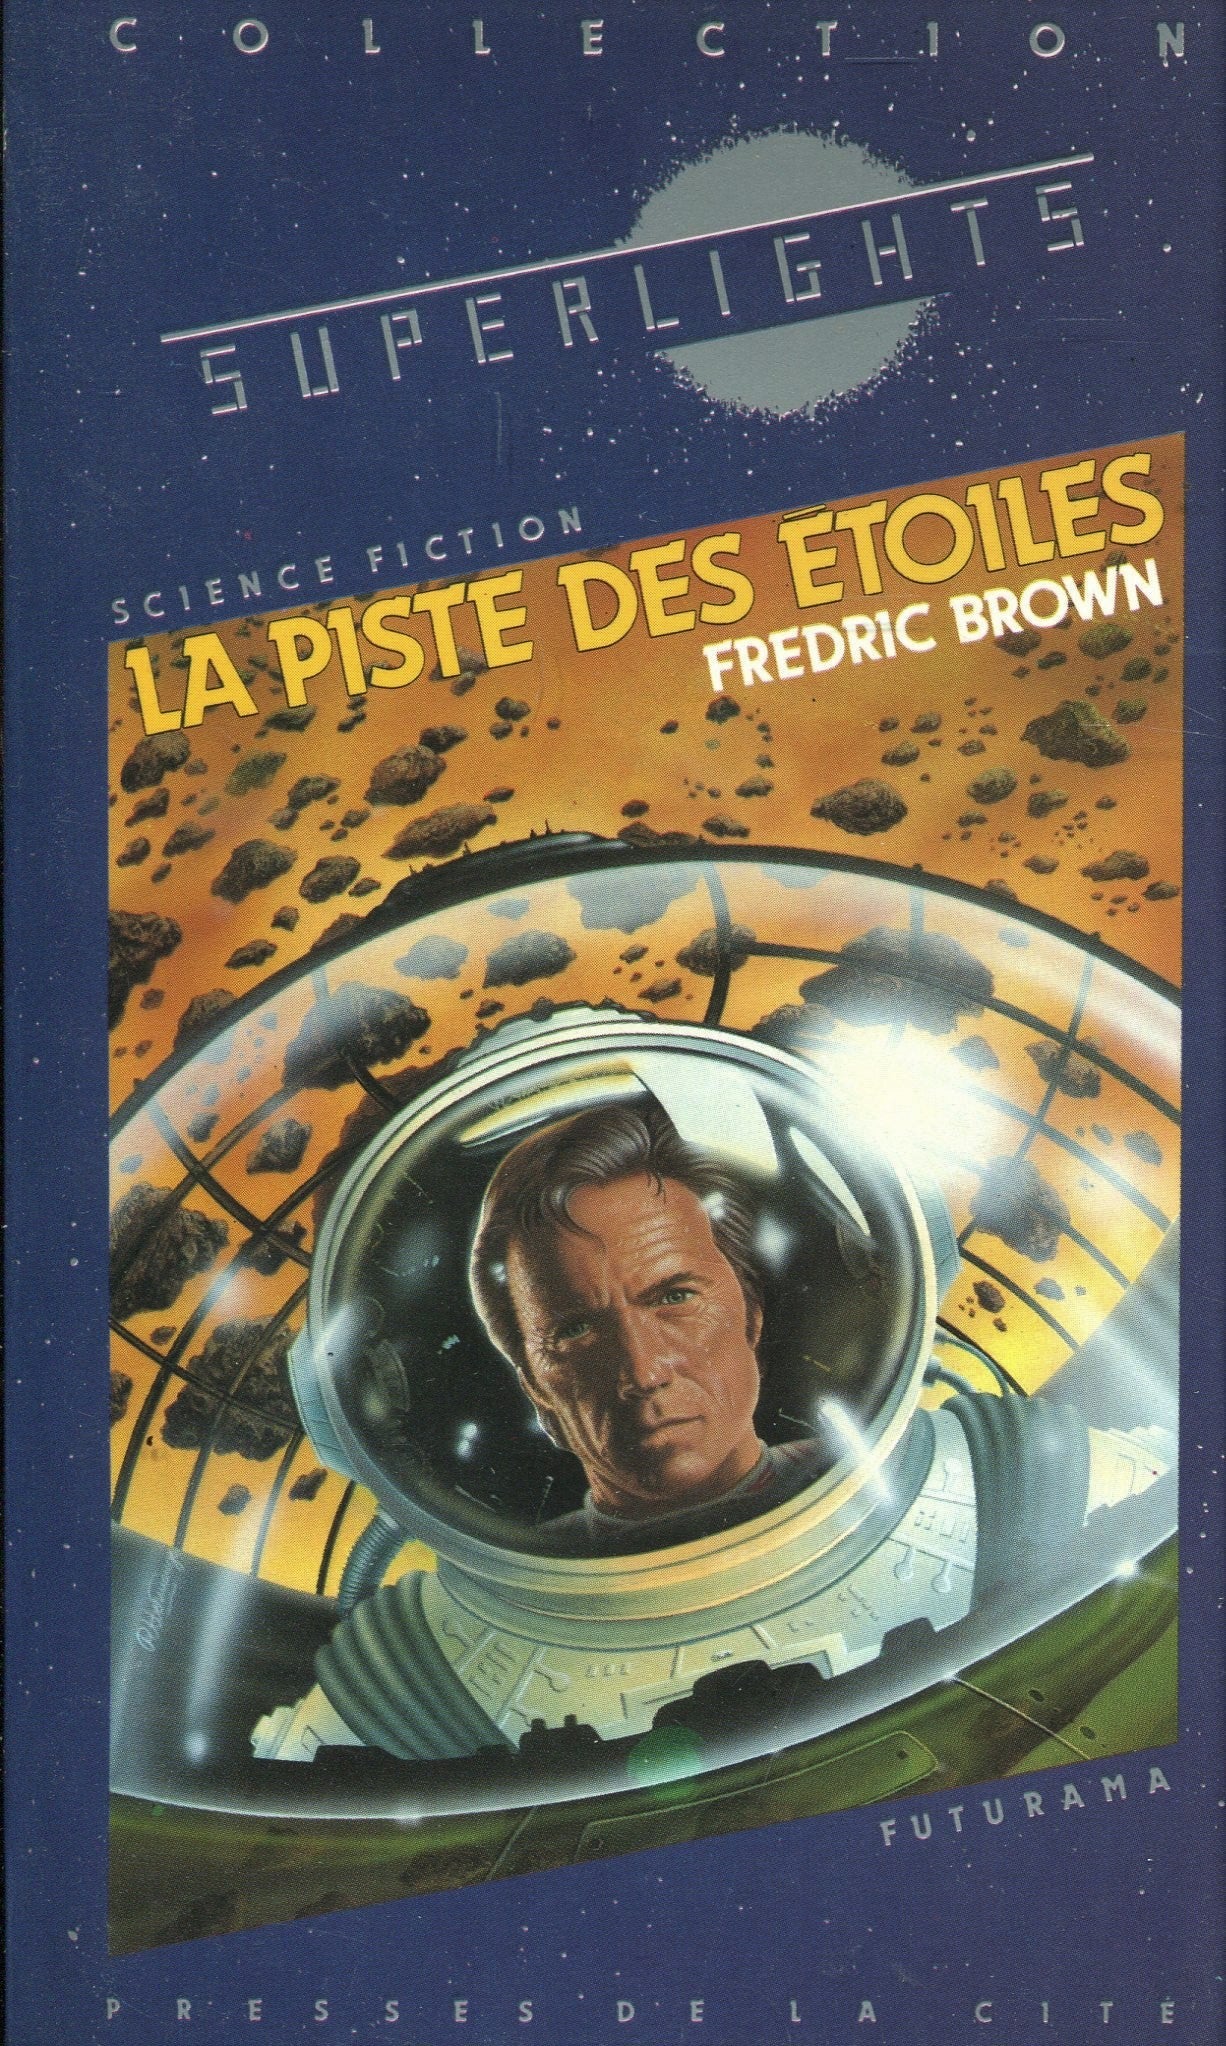 Superlights # 19 : La piste des étoiles - Fredric Brown